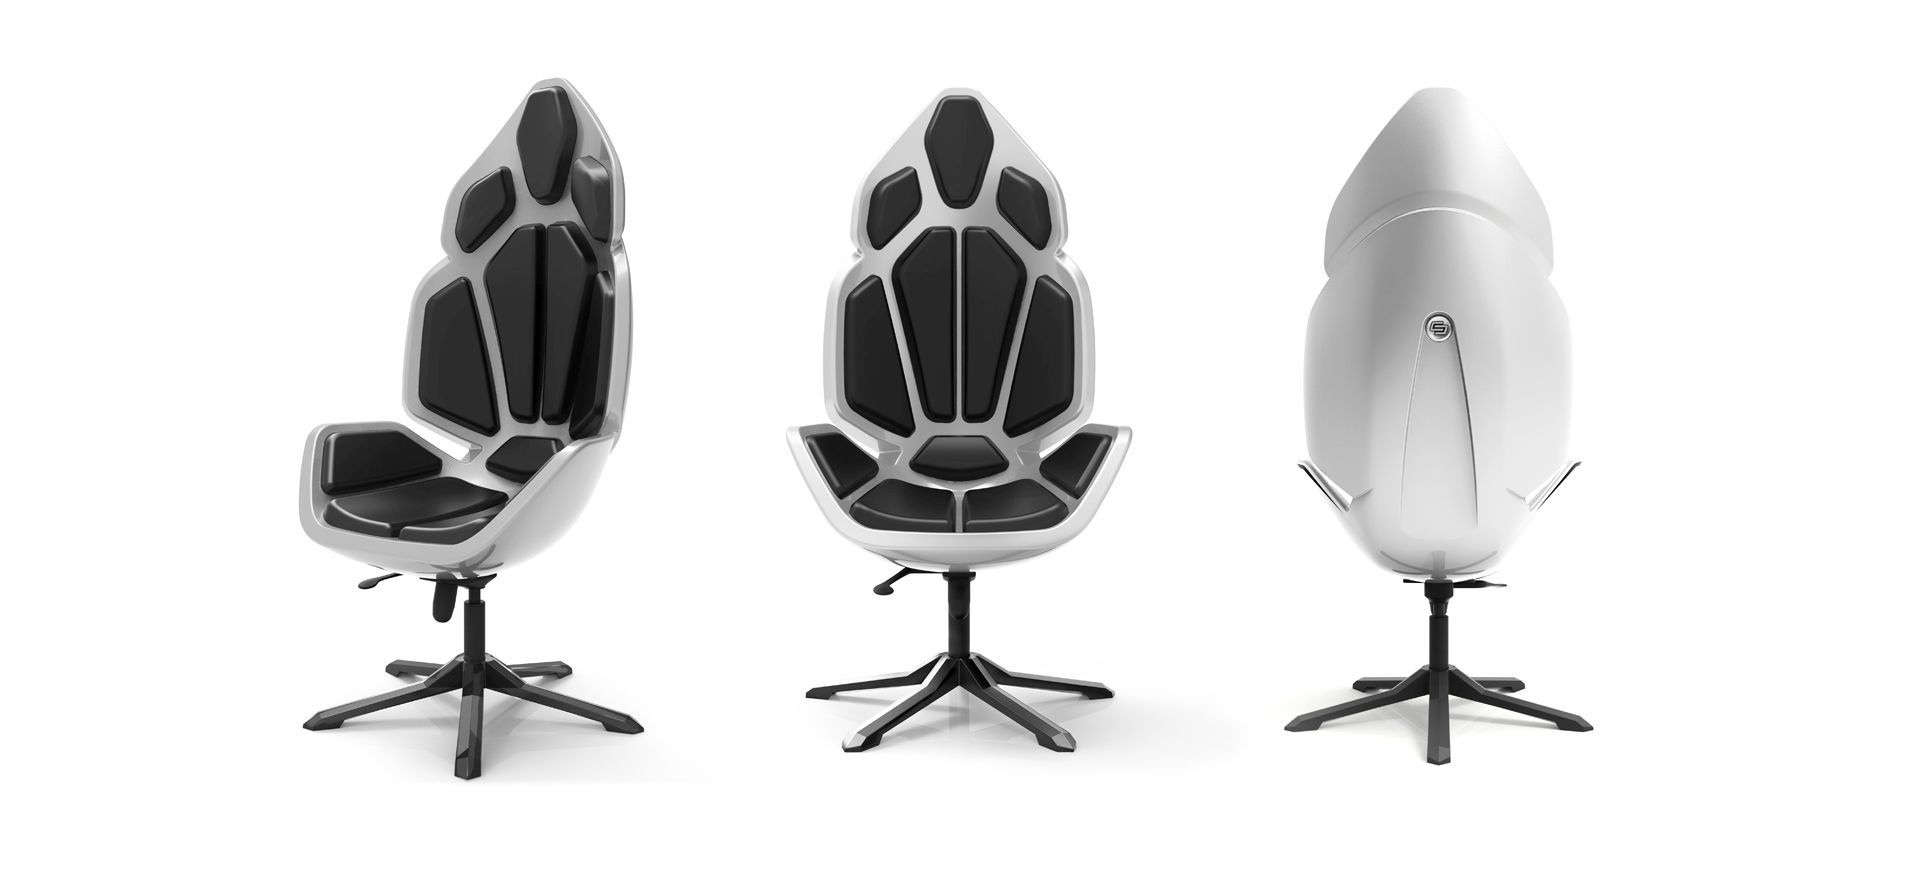 Carlex Design Concept Chair